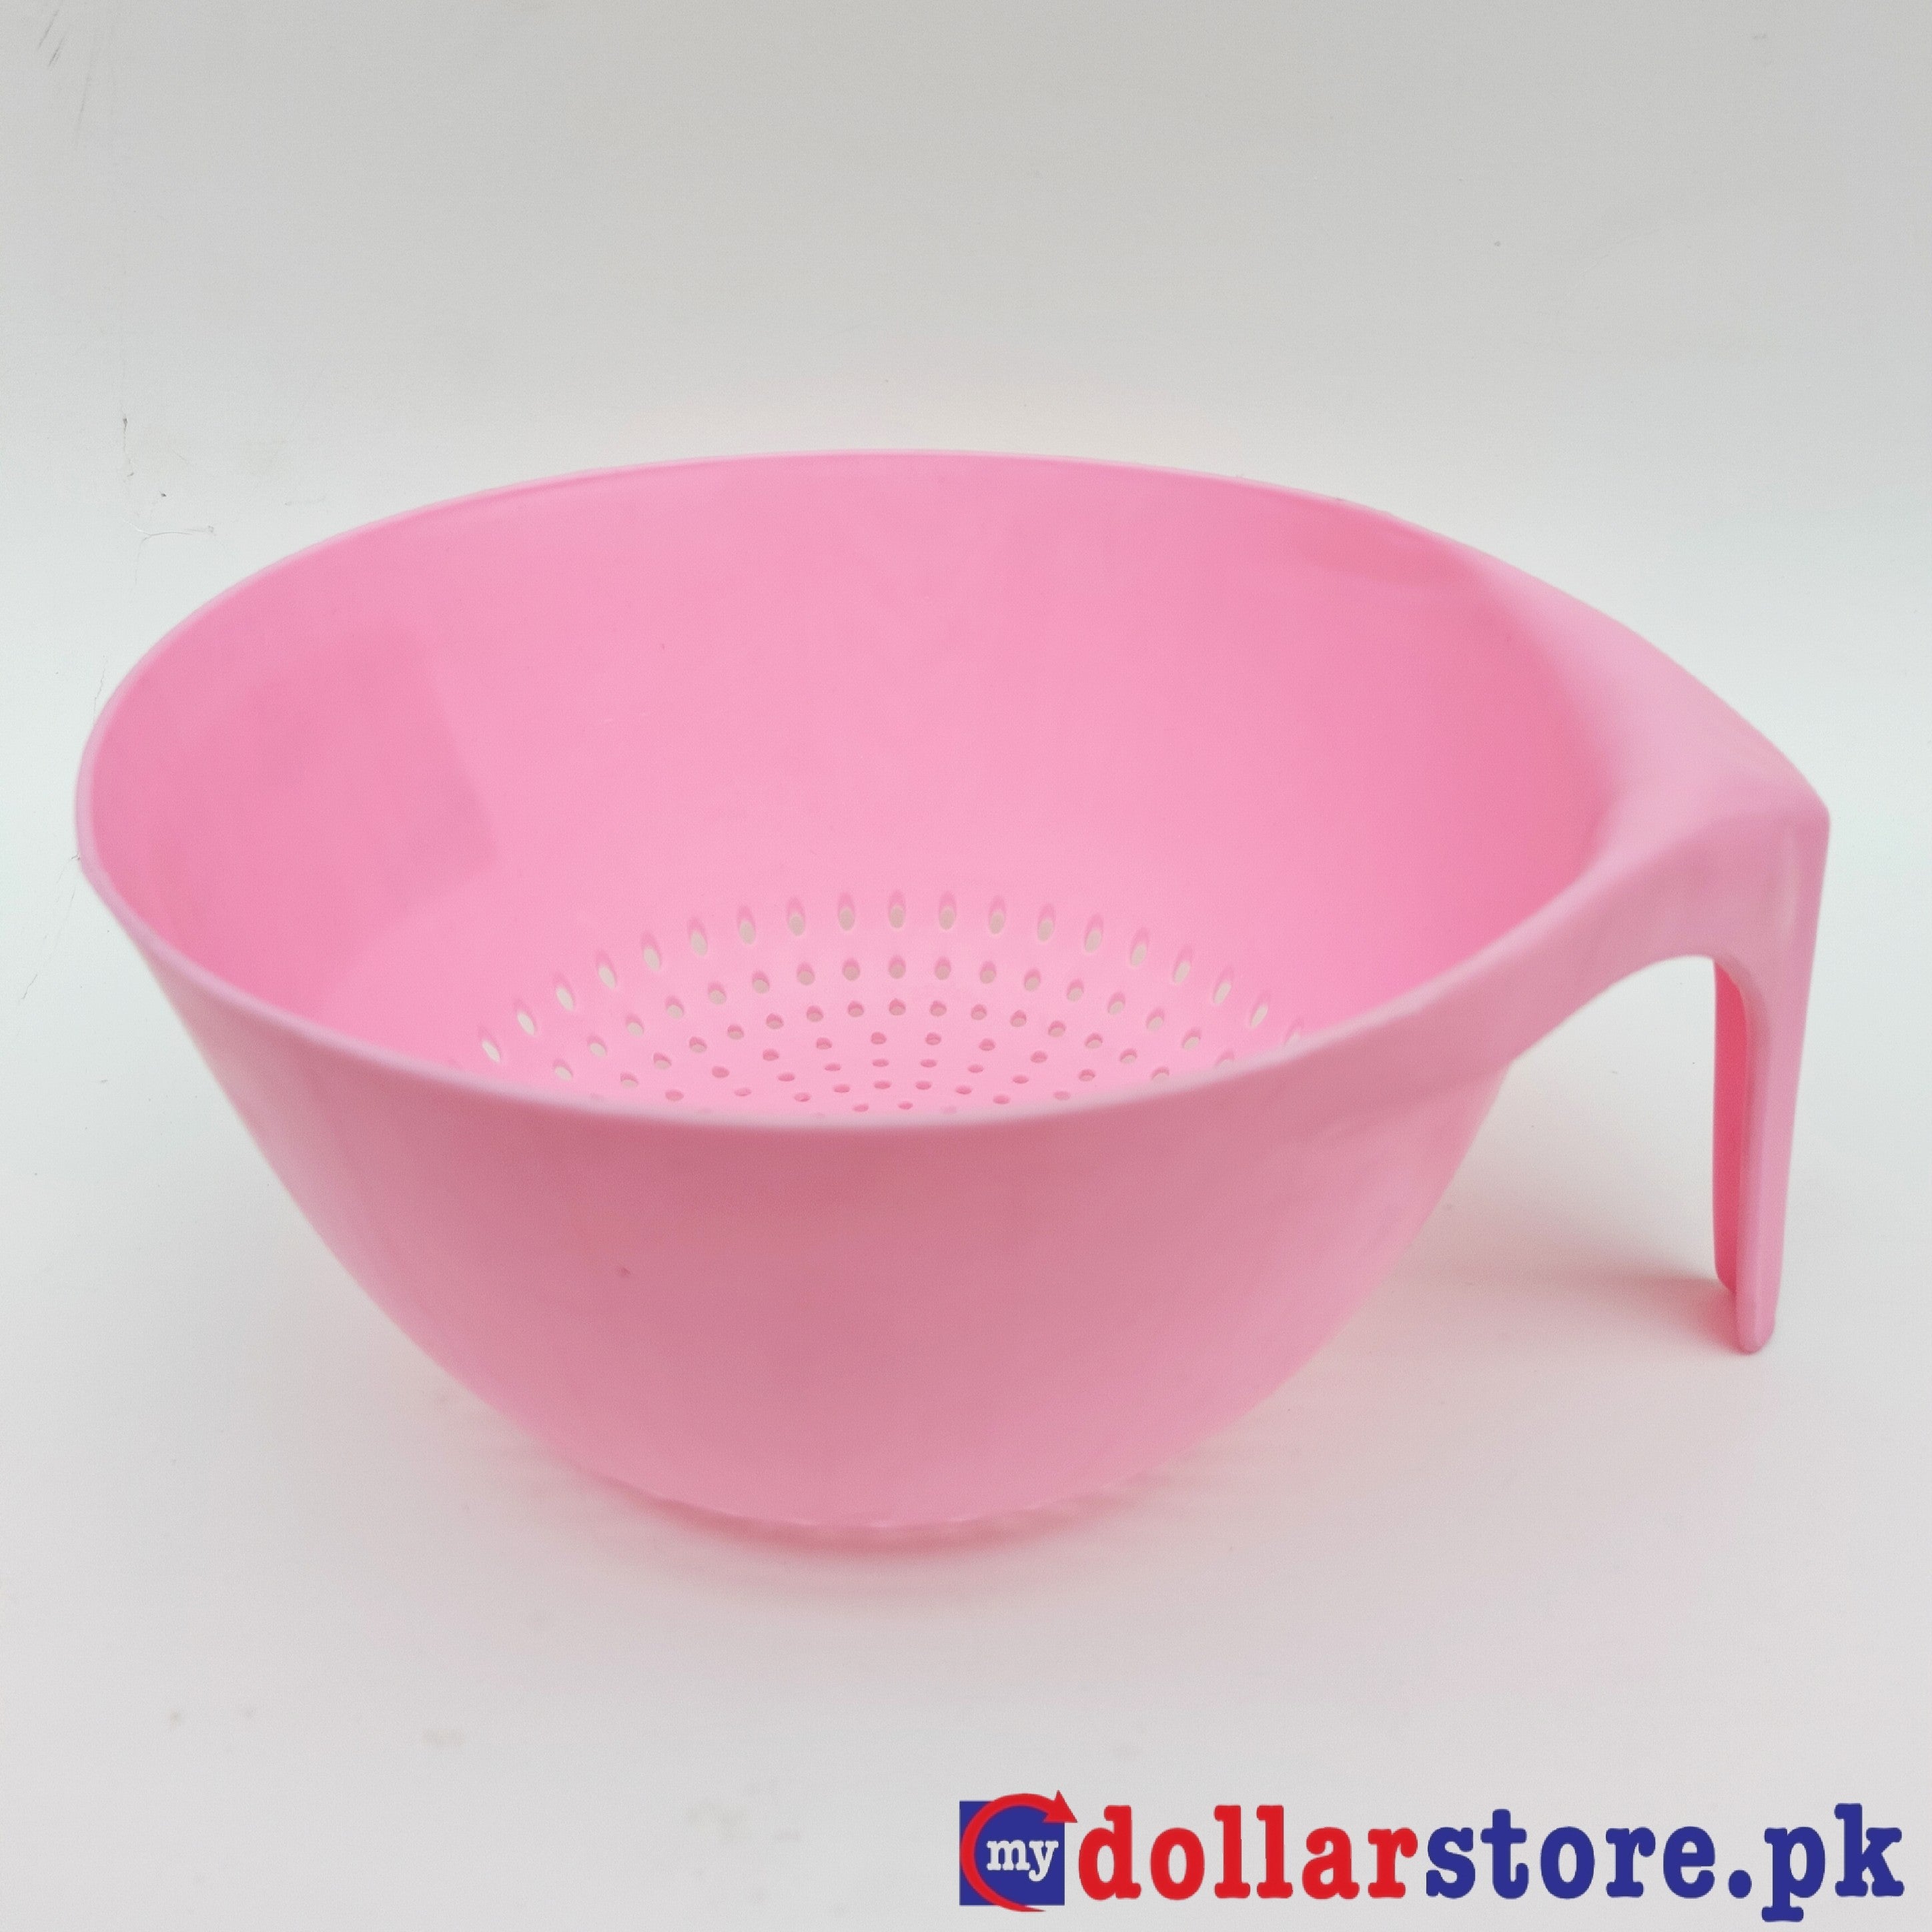 Strainer Bowl - Pink Color